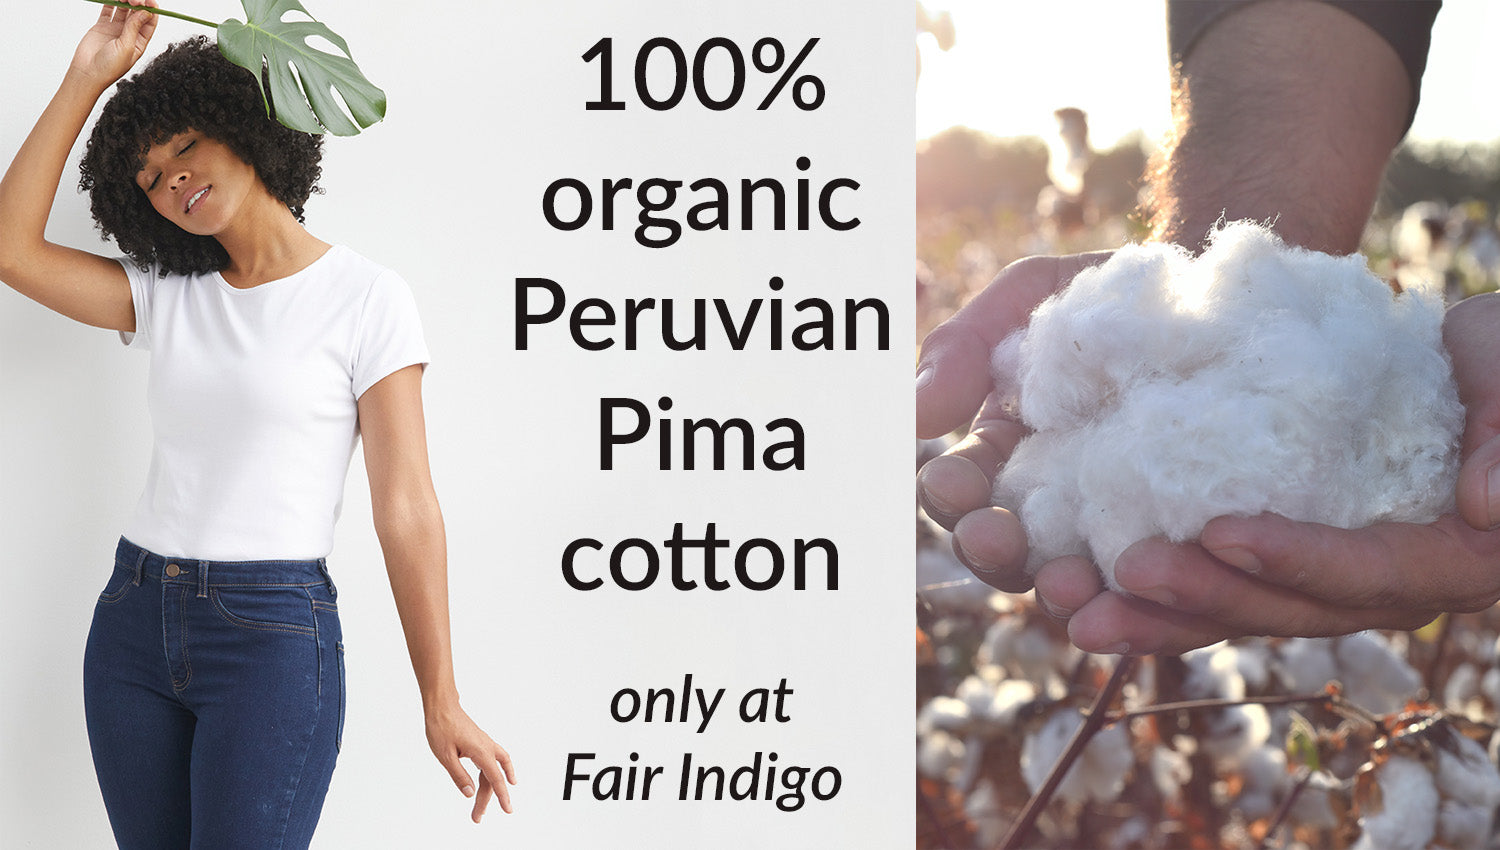 https://cdn.shopify.com/s/files/1/0028/2525/7027/files/100-organic-cotton-clothing.jpg?v=1694111144